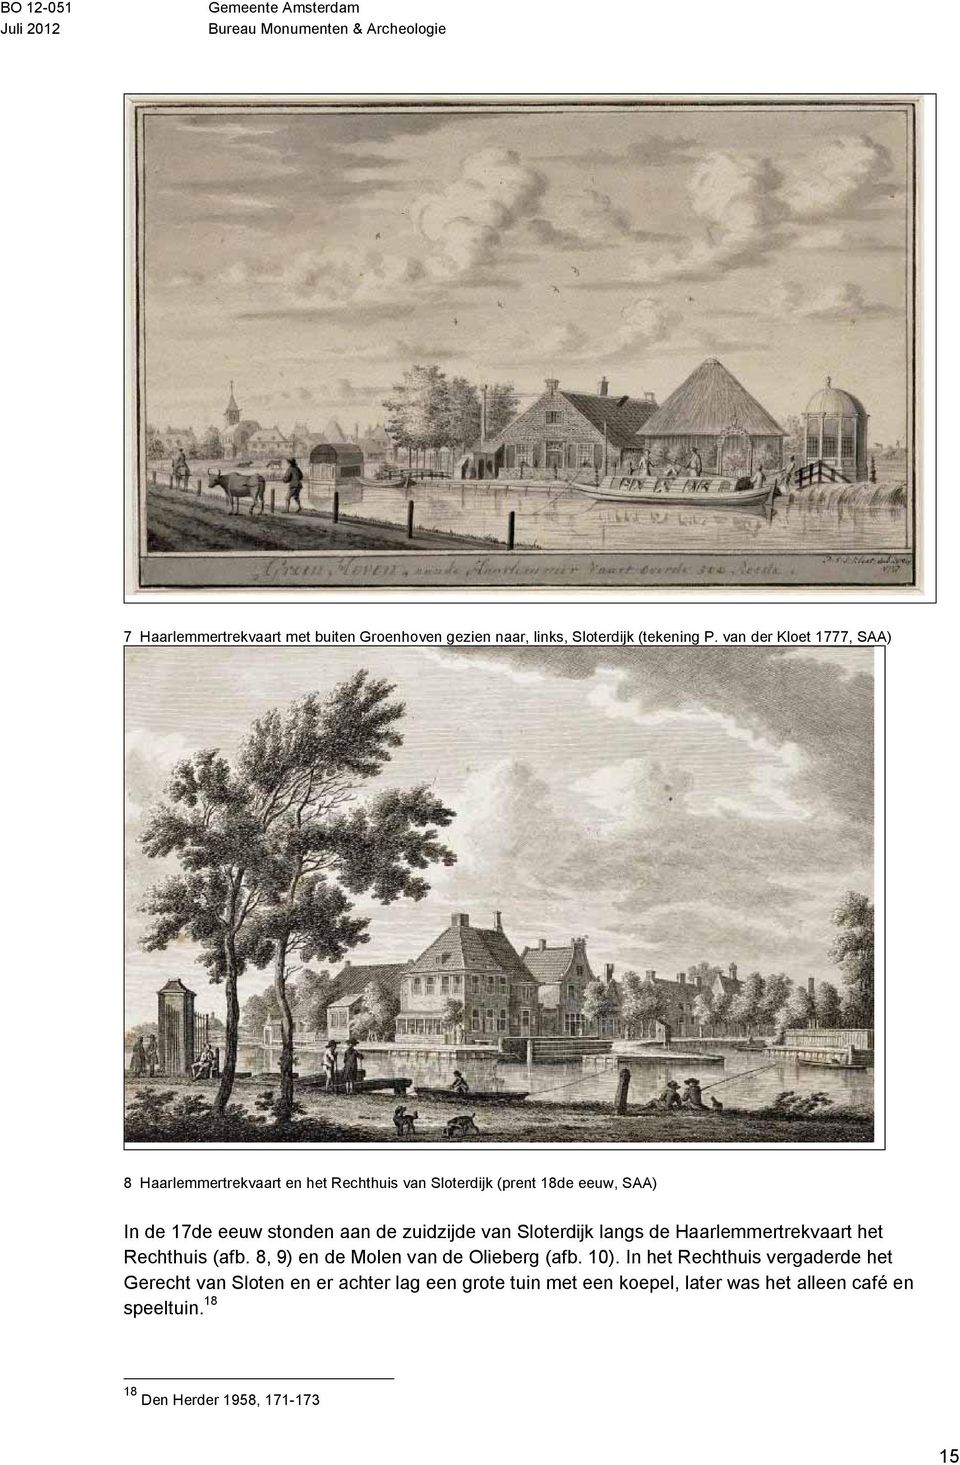 aan de zuidzijde van Sloterdijk langs de Haarlemmertrekvaart het Rechthuis (afb. 8, 9) en de Molen van de Olieberg (afb. 10).